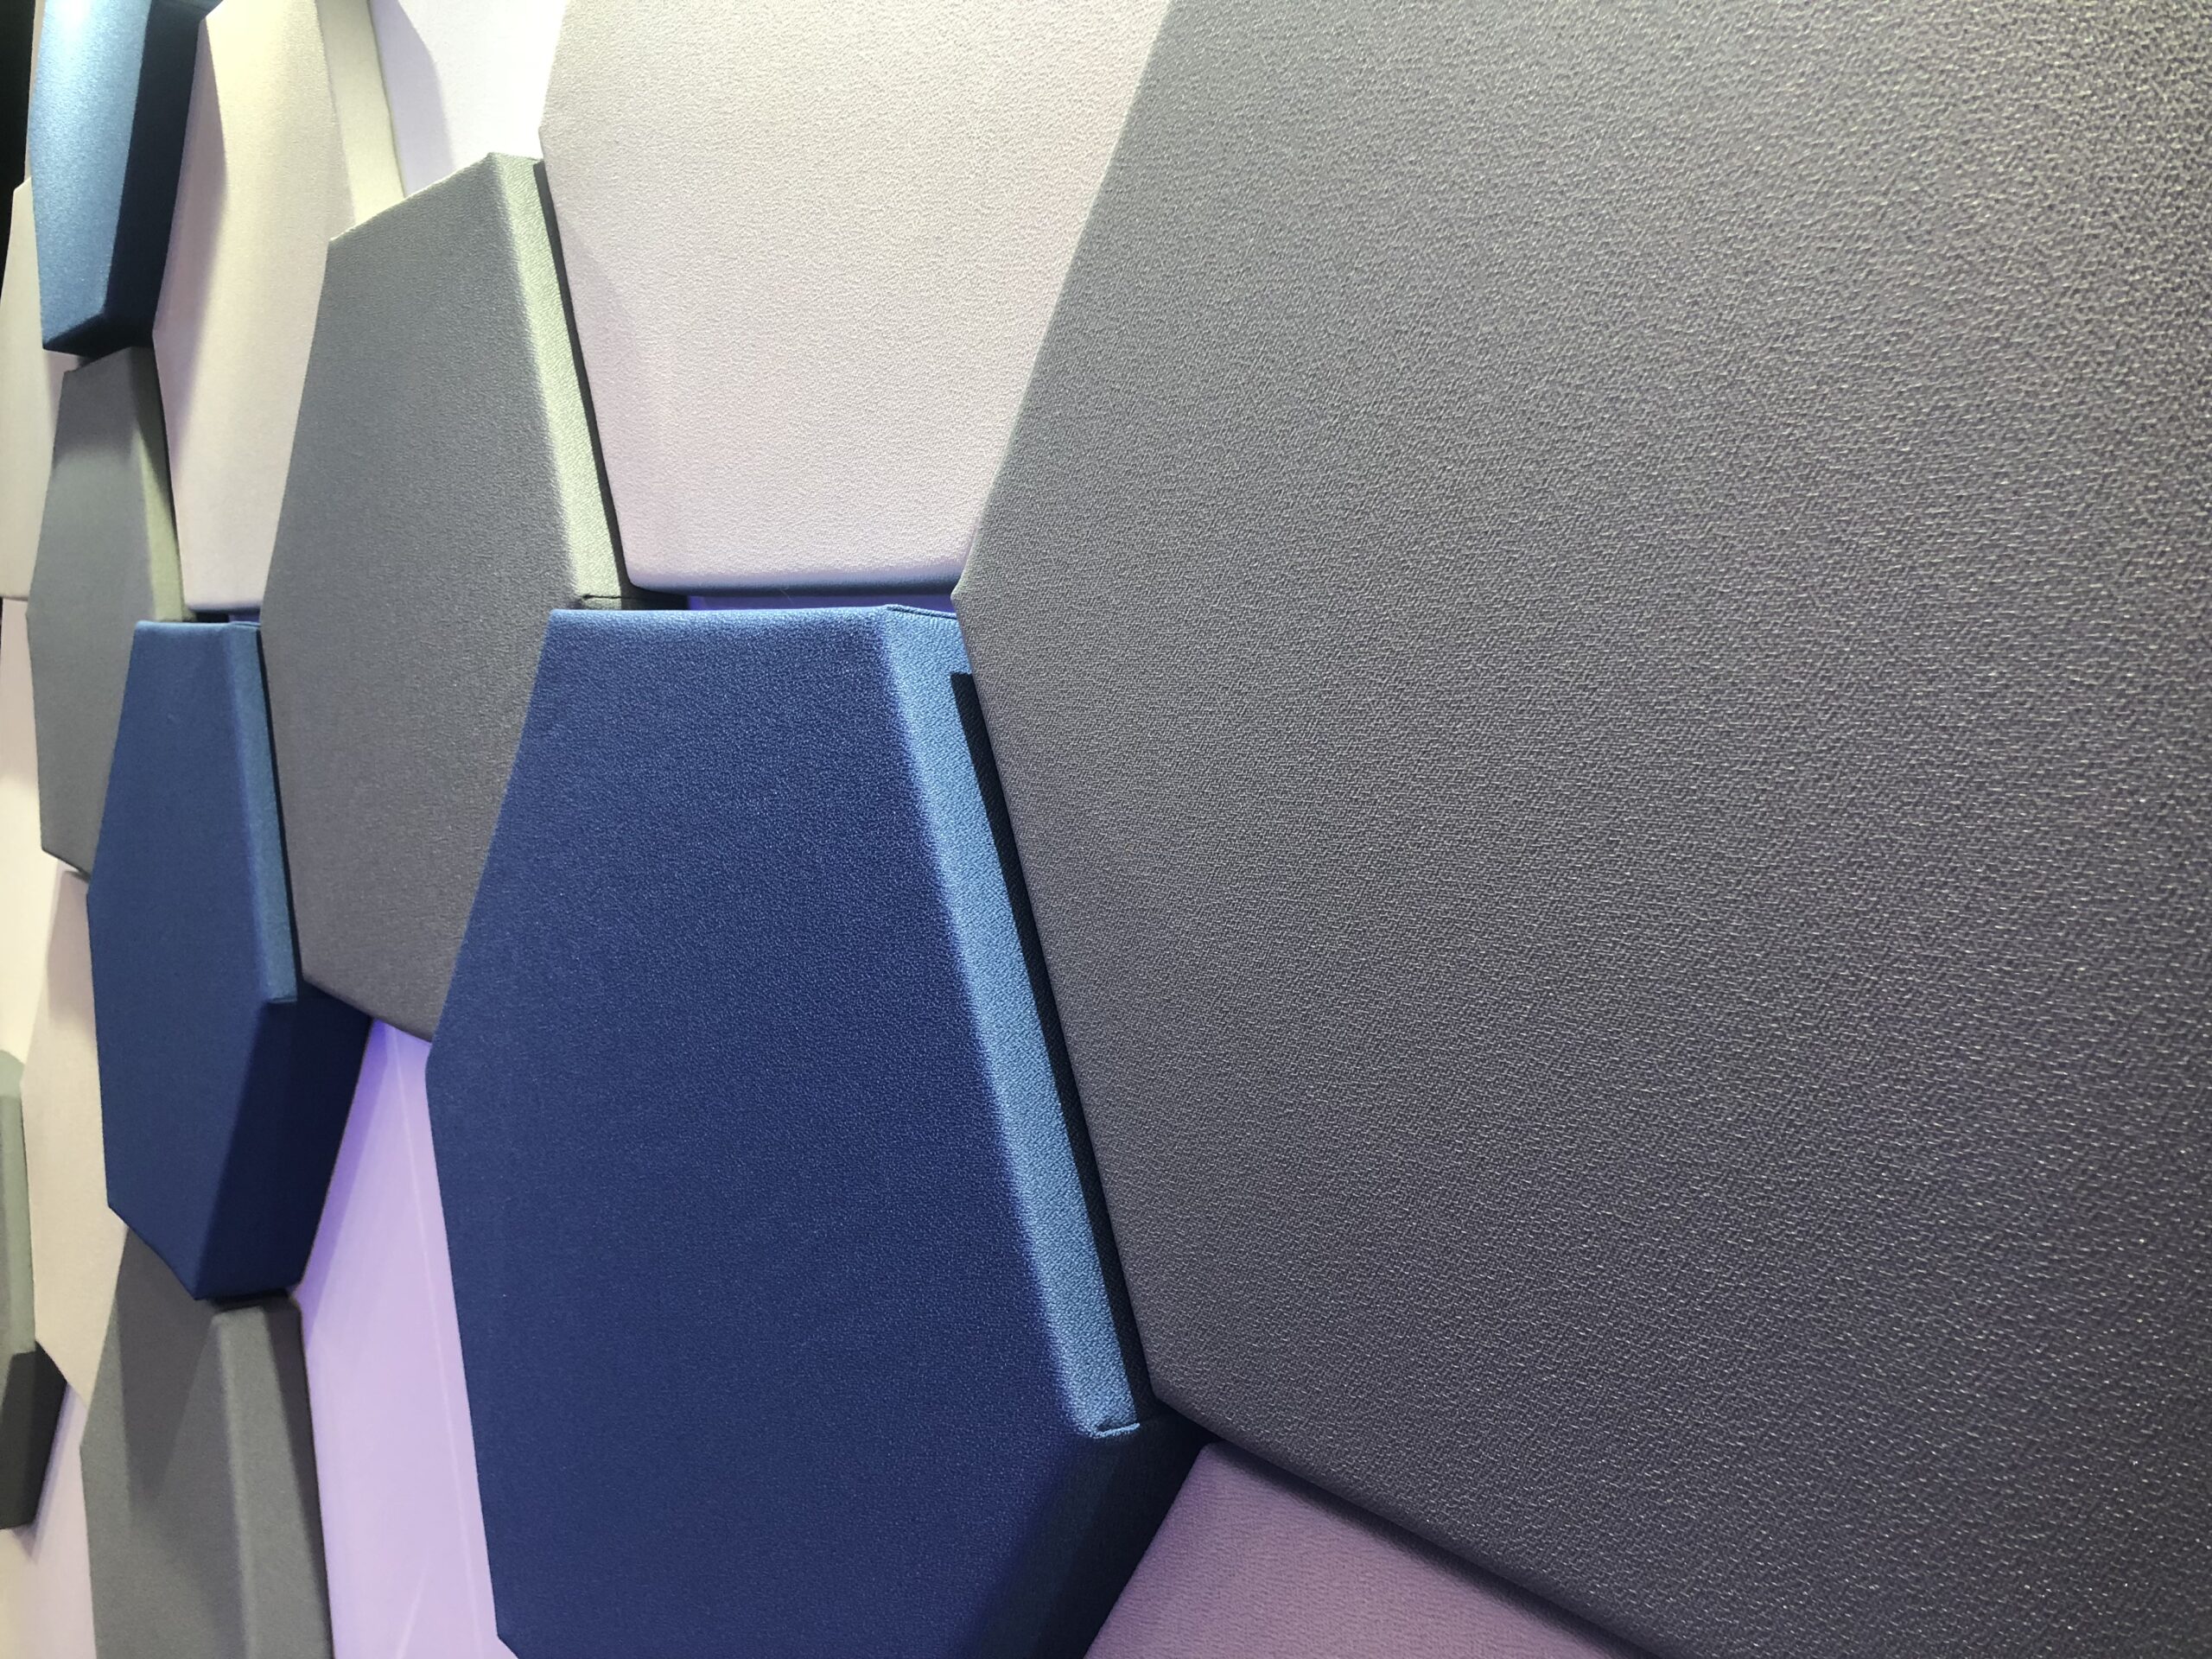 Panel hexagonal insonorizado, calcomanías de pared de 3 piezas, tratamiento  acústico, paneles absorbentes de sonido, aislamiento acústico, Panel de  pared a prueba de sonido